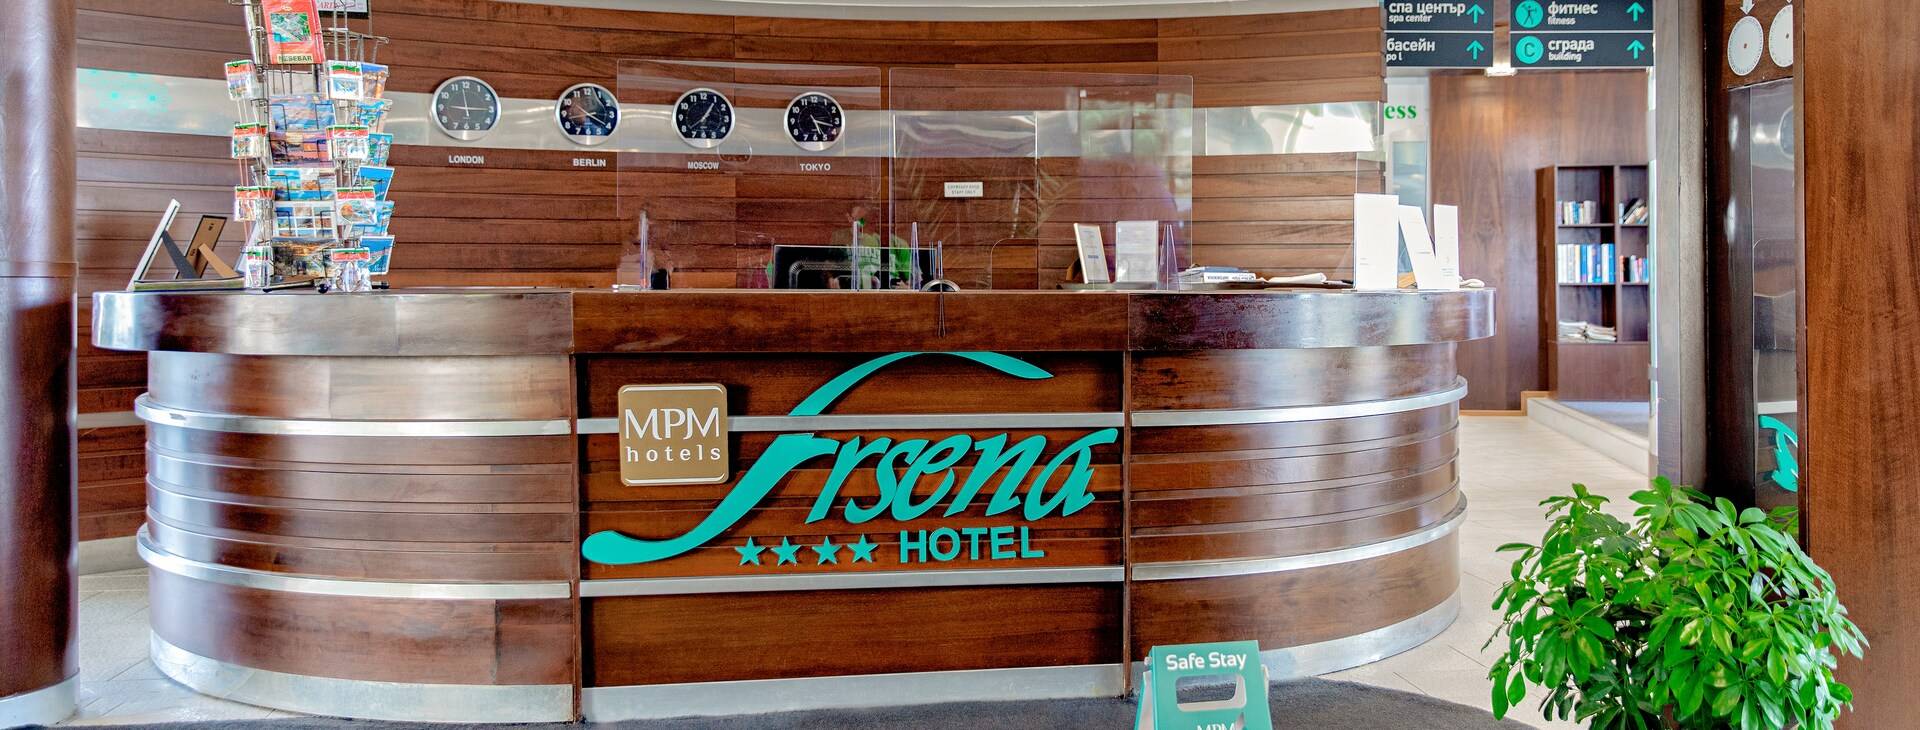 Hotel MPM Arsena Obrázok31